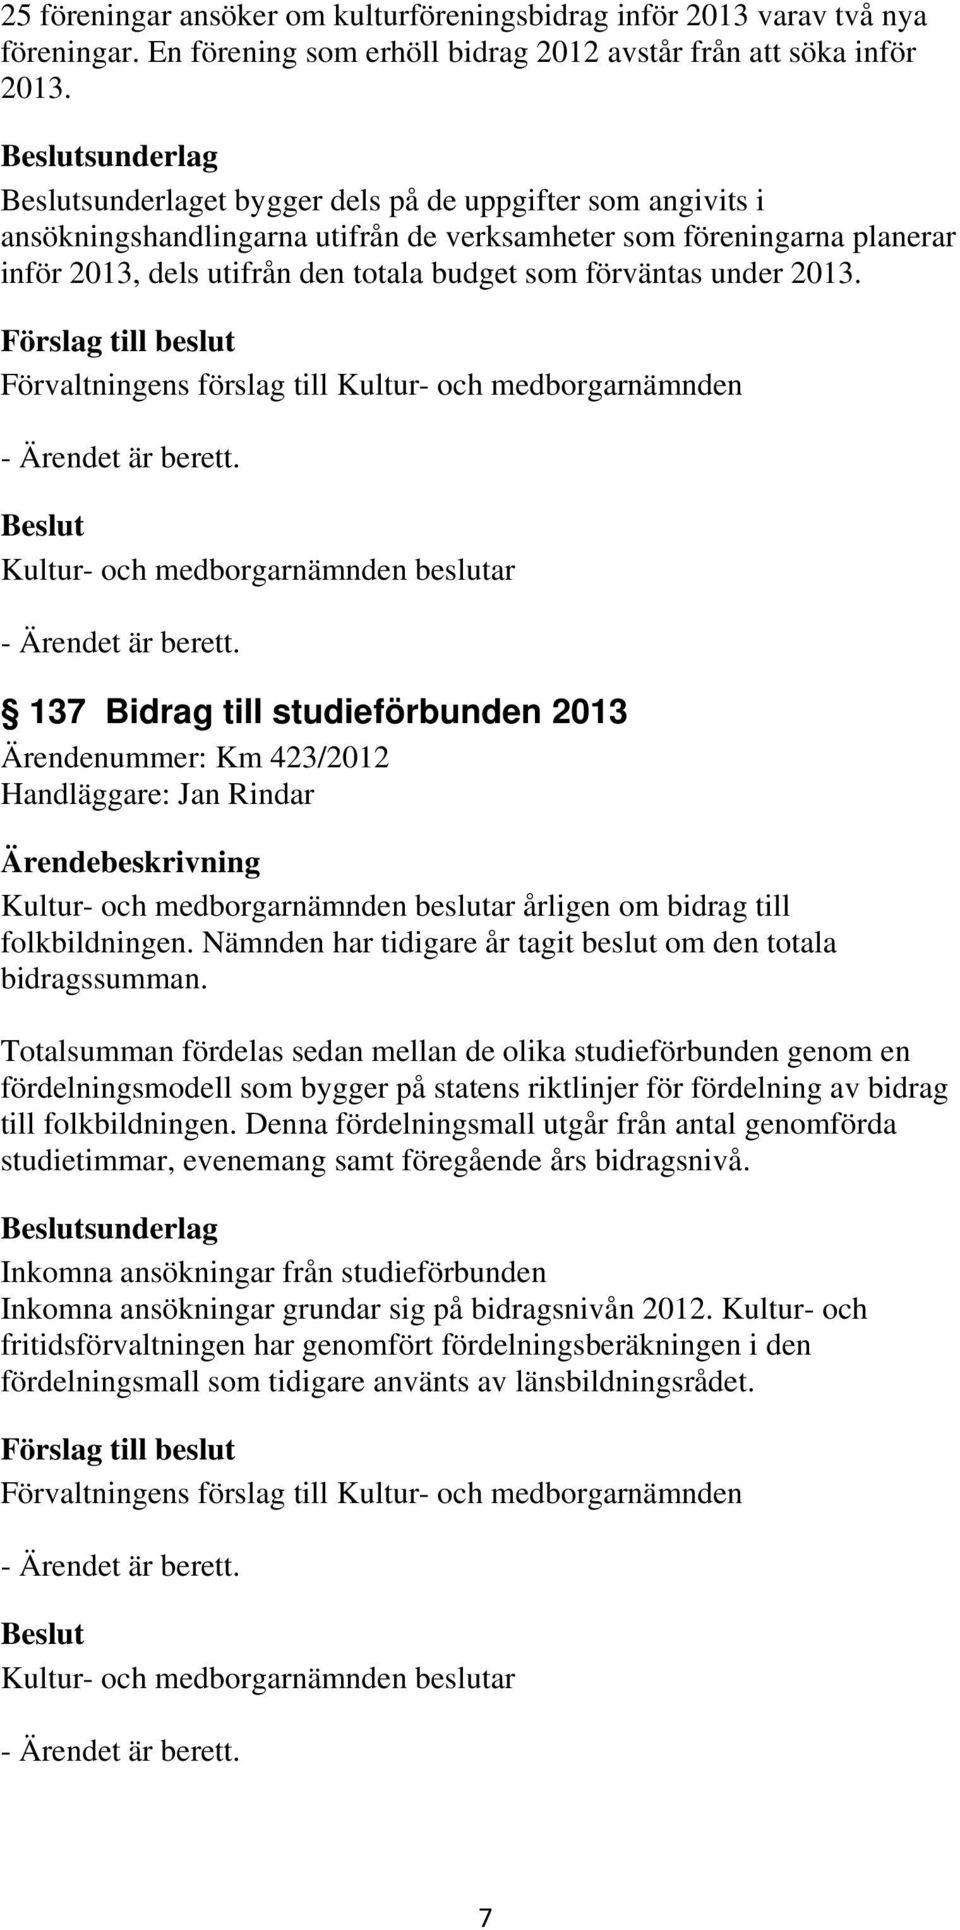 under 2013. 137 Bidrag till studieförbunden 2013 Ärendenummer: Km 423/2012 Handläggare: Jan Rindar årligen om bidrag till folkbildningen.